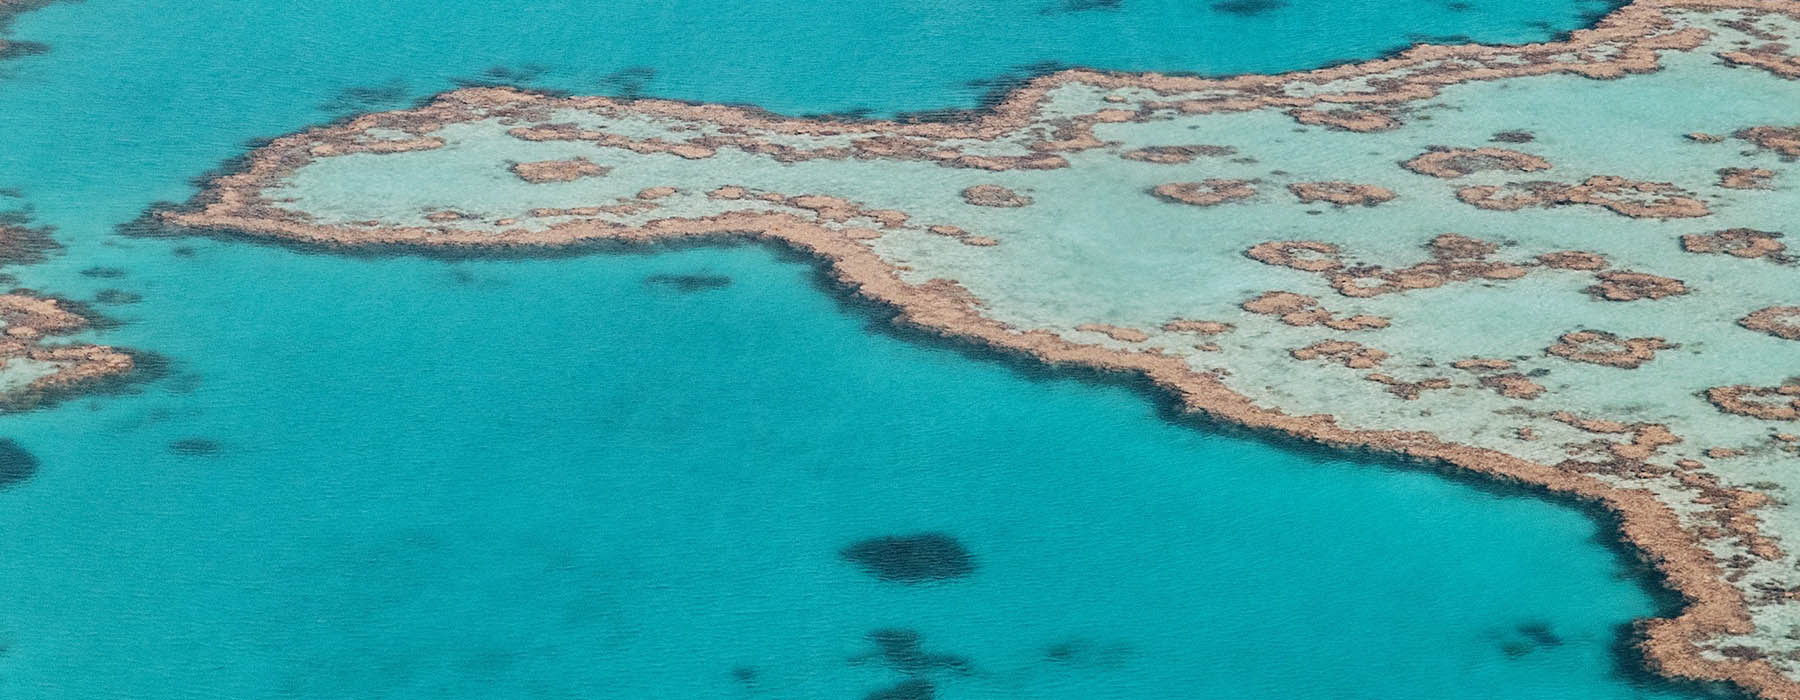 Queensland & The Great Barrier Reef<br class="hidden-md hidden-lg" /> Holidays